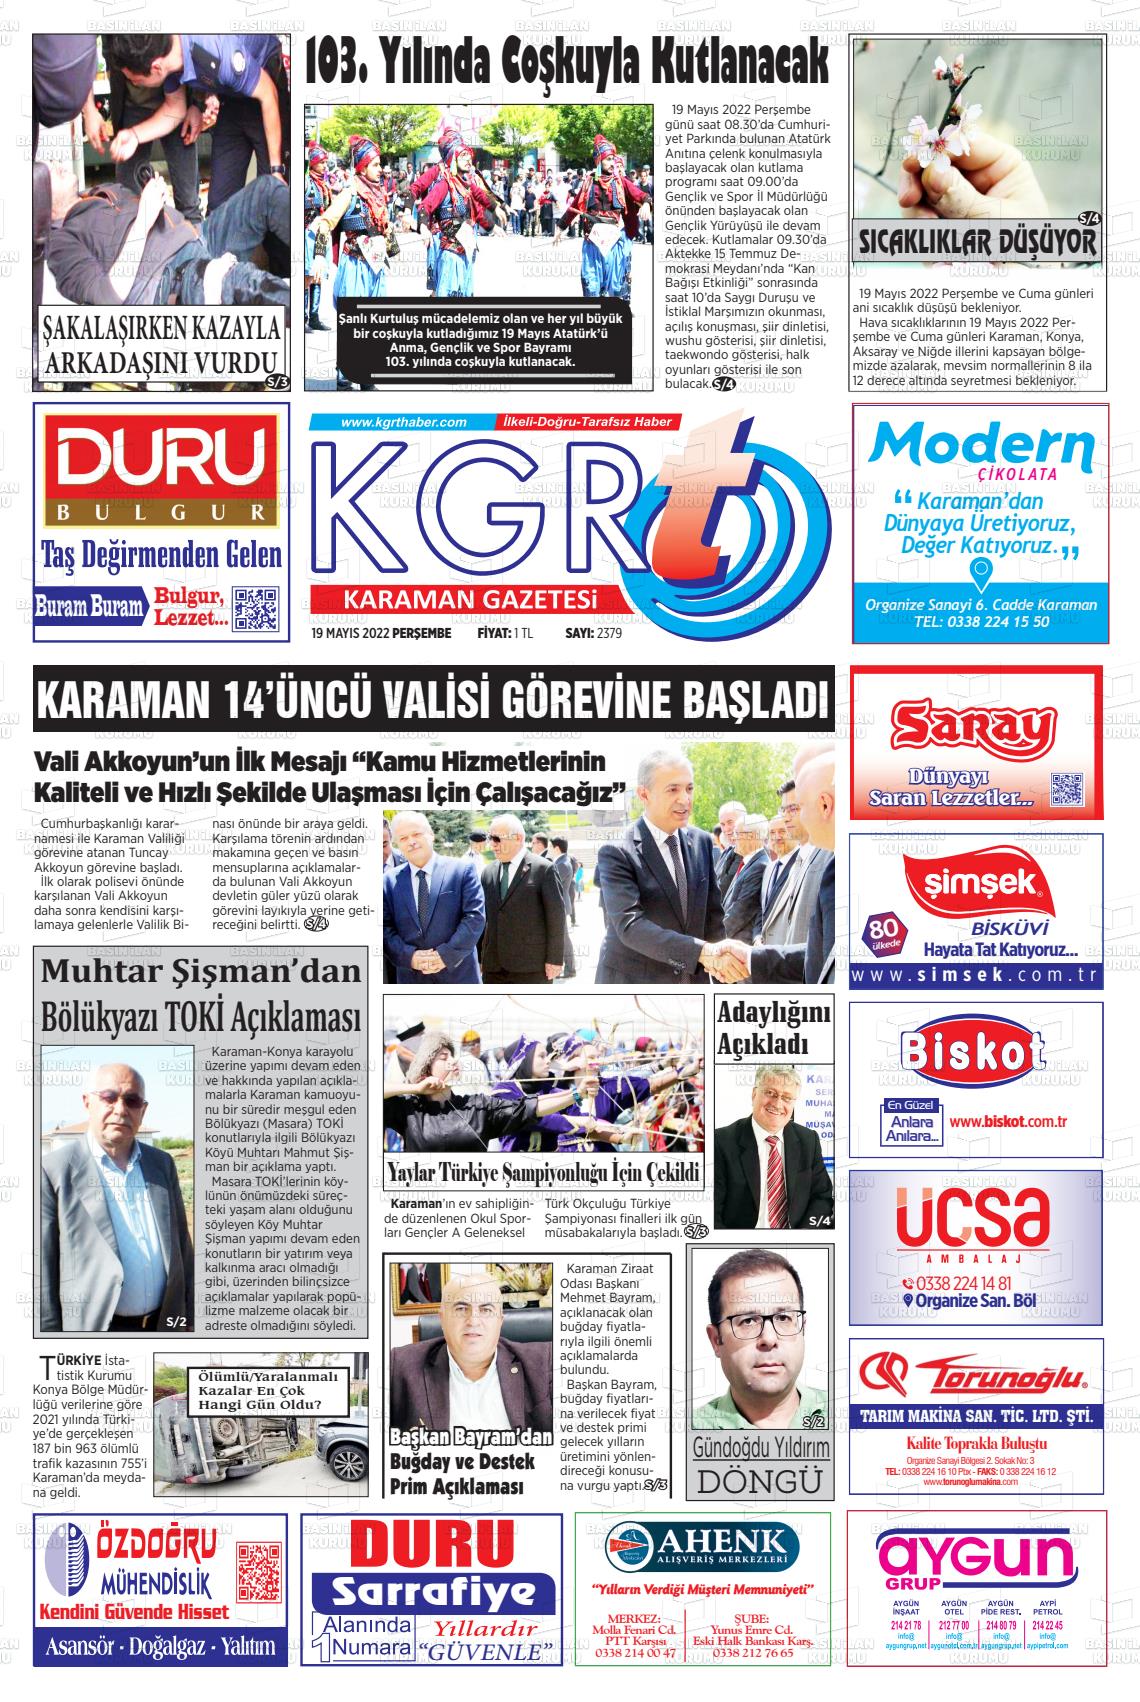 19 Mayıs 2022 Kgrt Karaman Gazete Manşeti